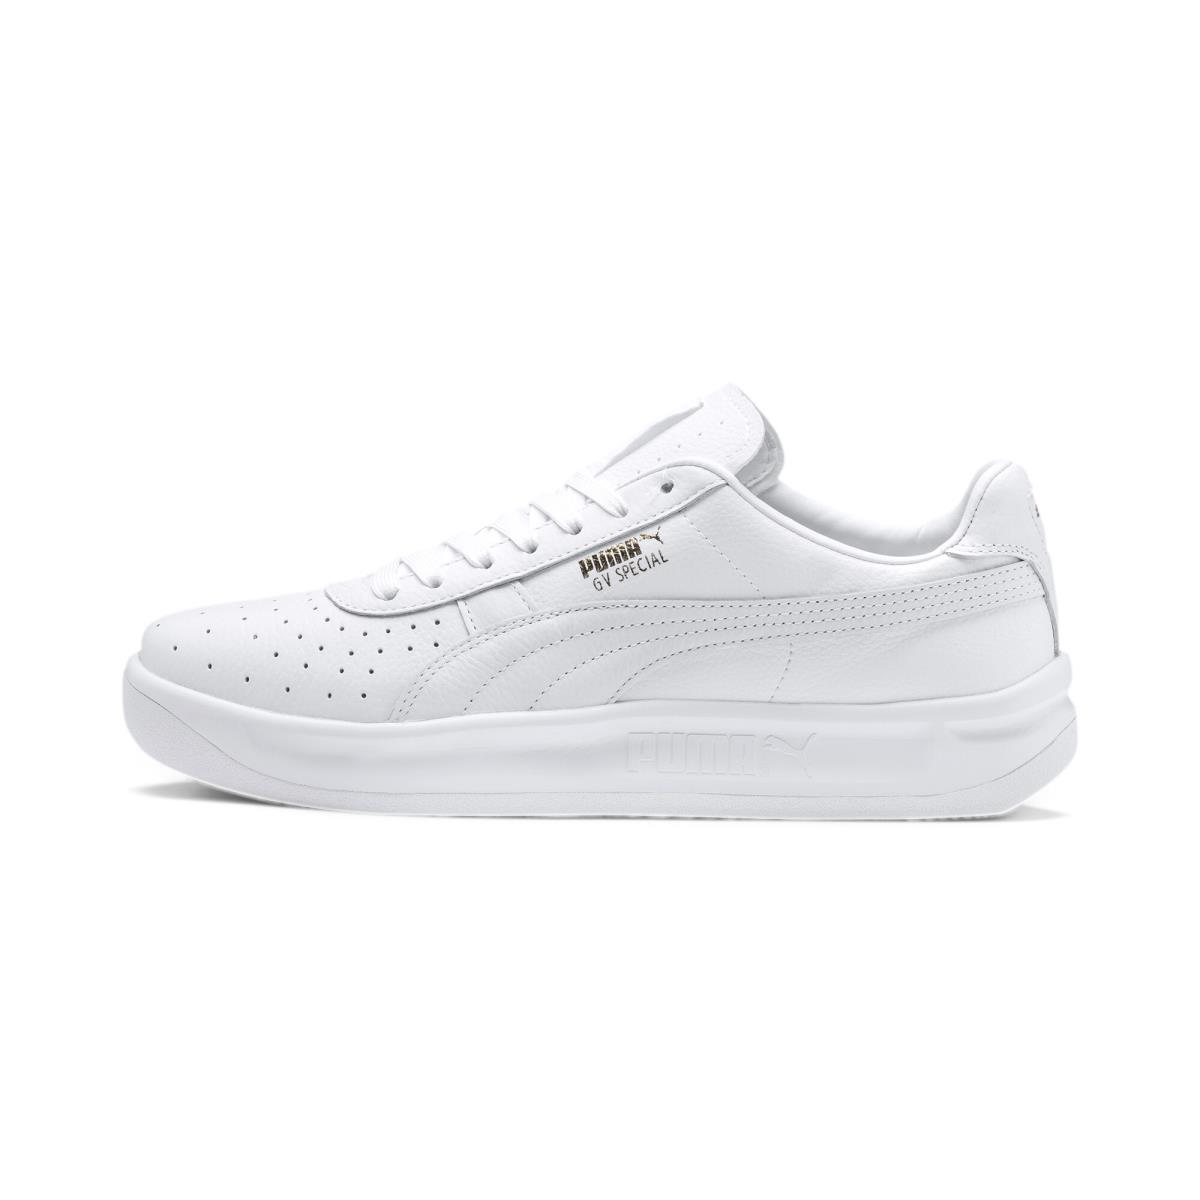 Puma Unisex GV Special+ Sneakers White - White/White